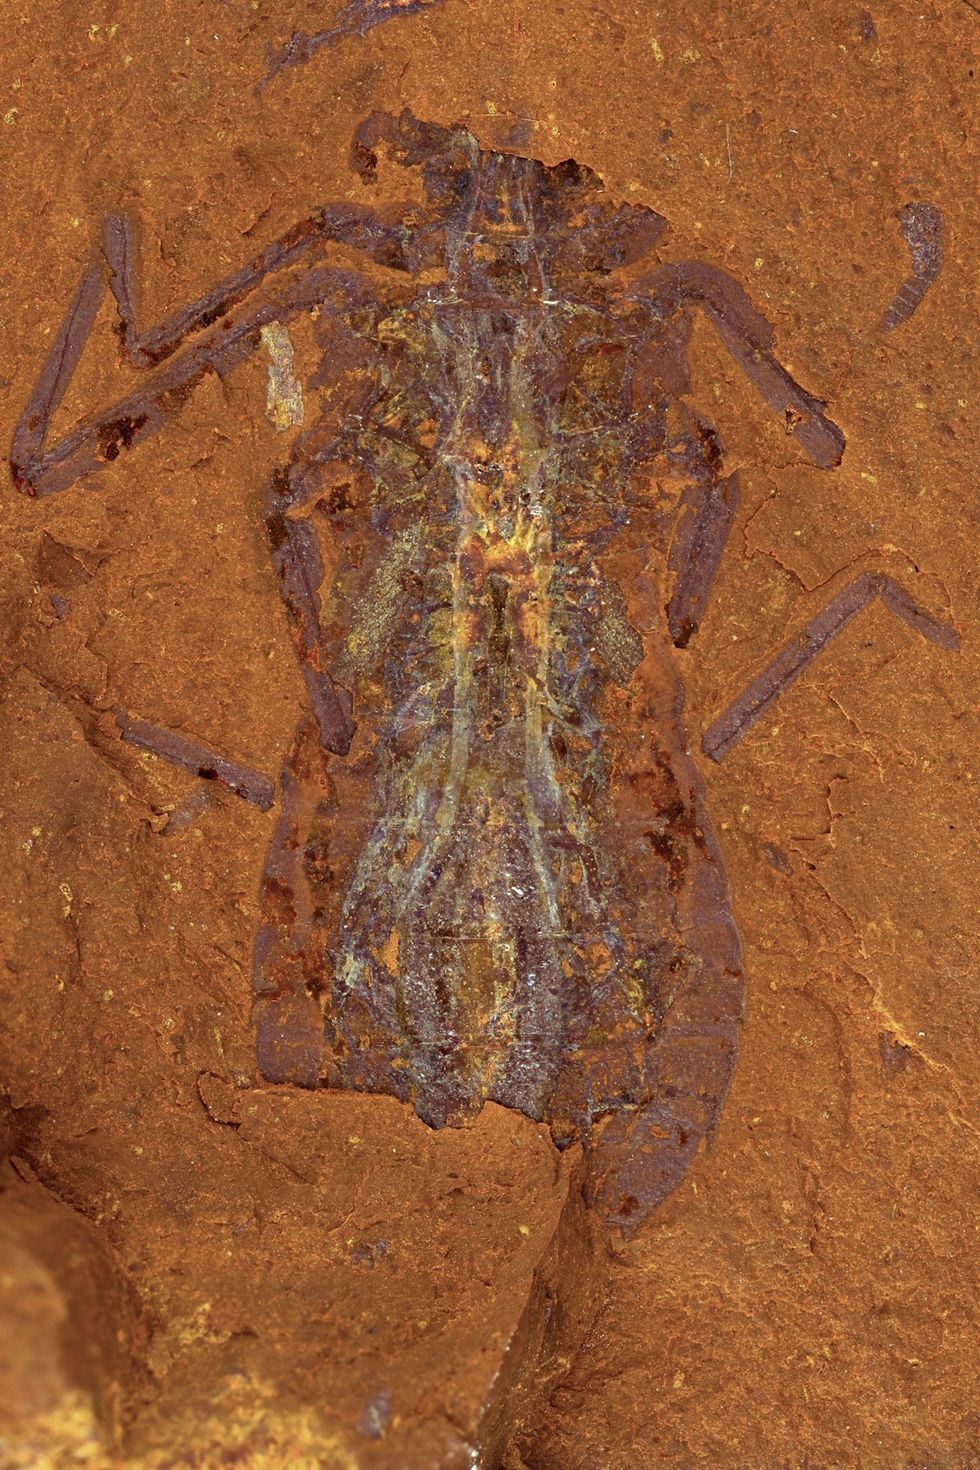 In McGraths Flat zijn ook allerlei soorten insecten bewaard gebleven zoals deze fossiel van een ronddrijvende najade de larf van een libelle